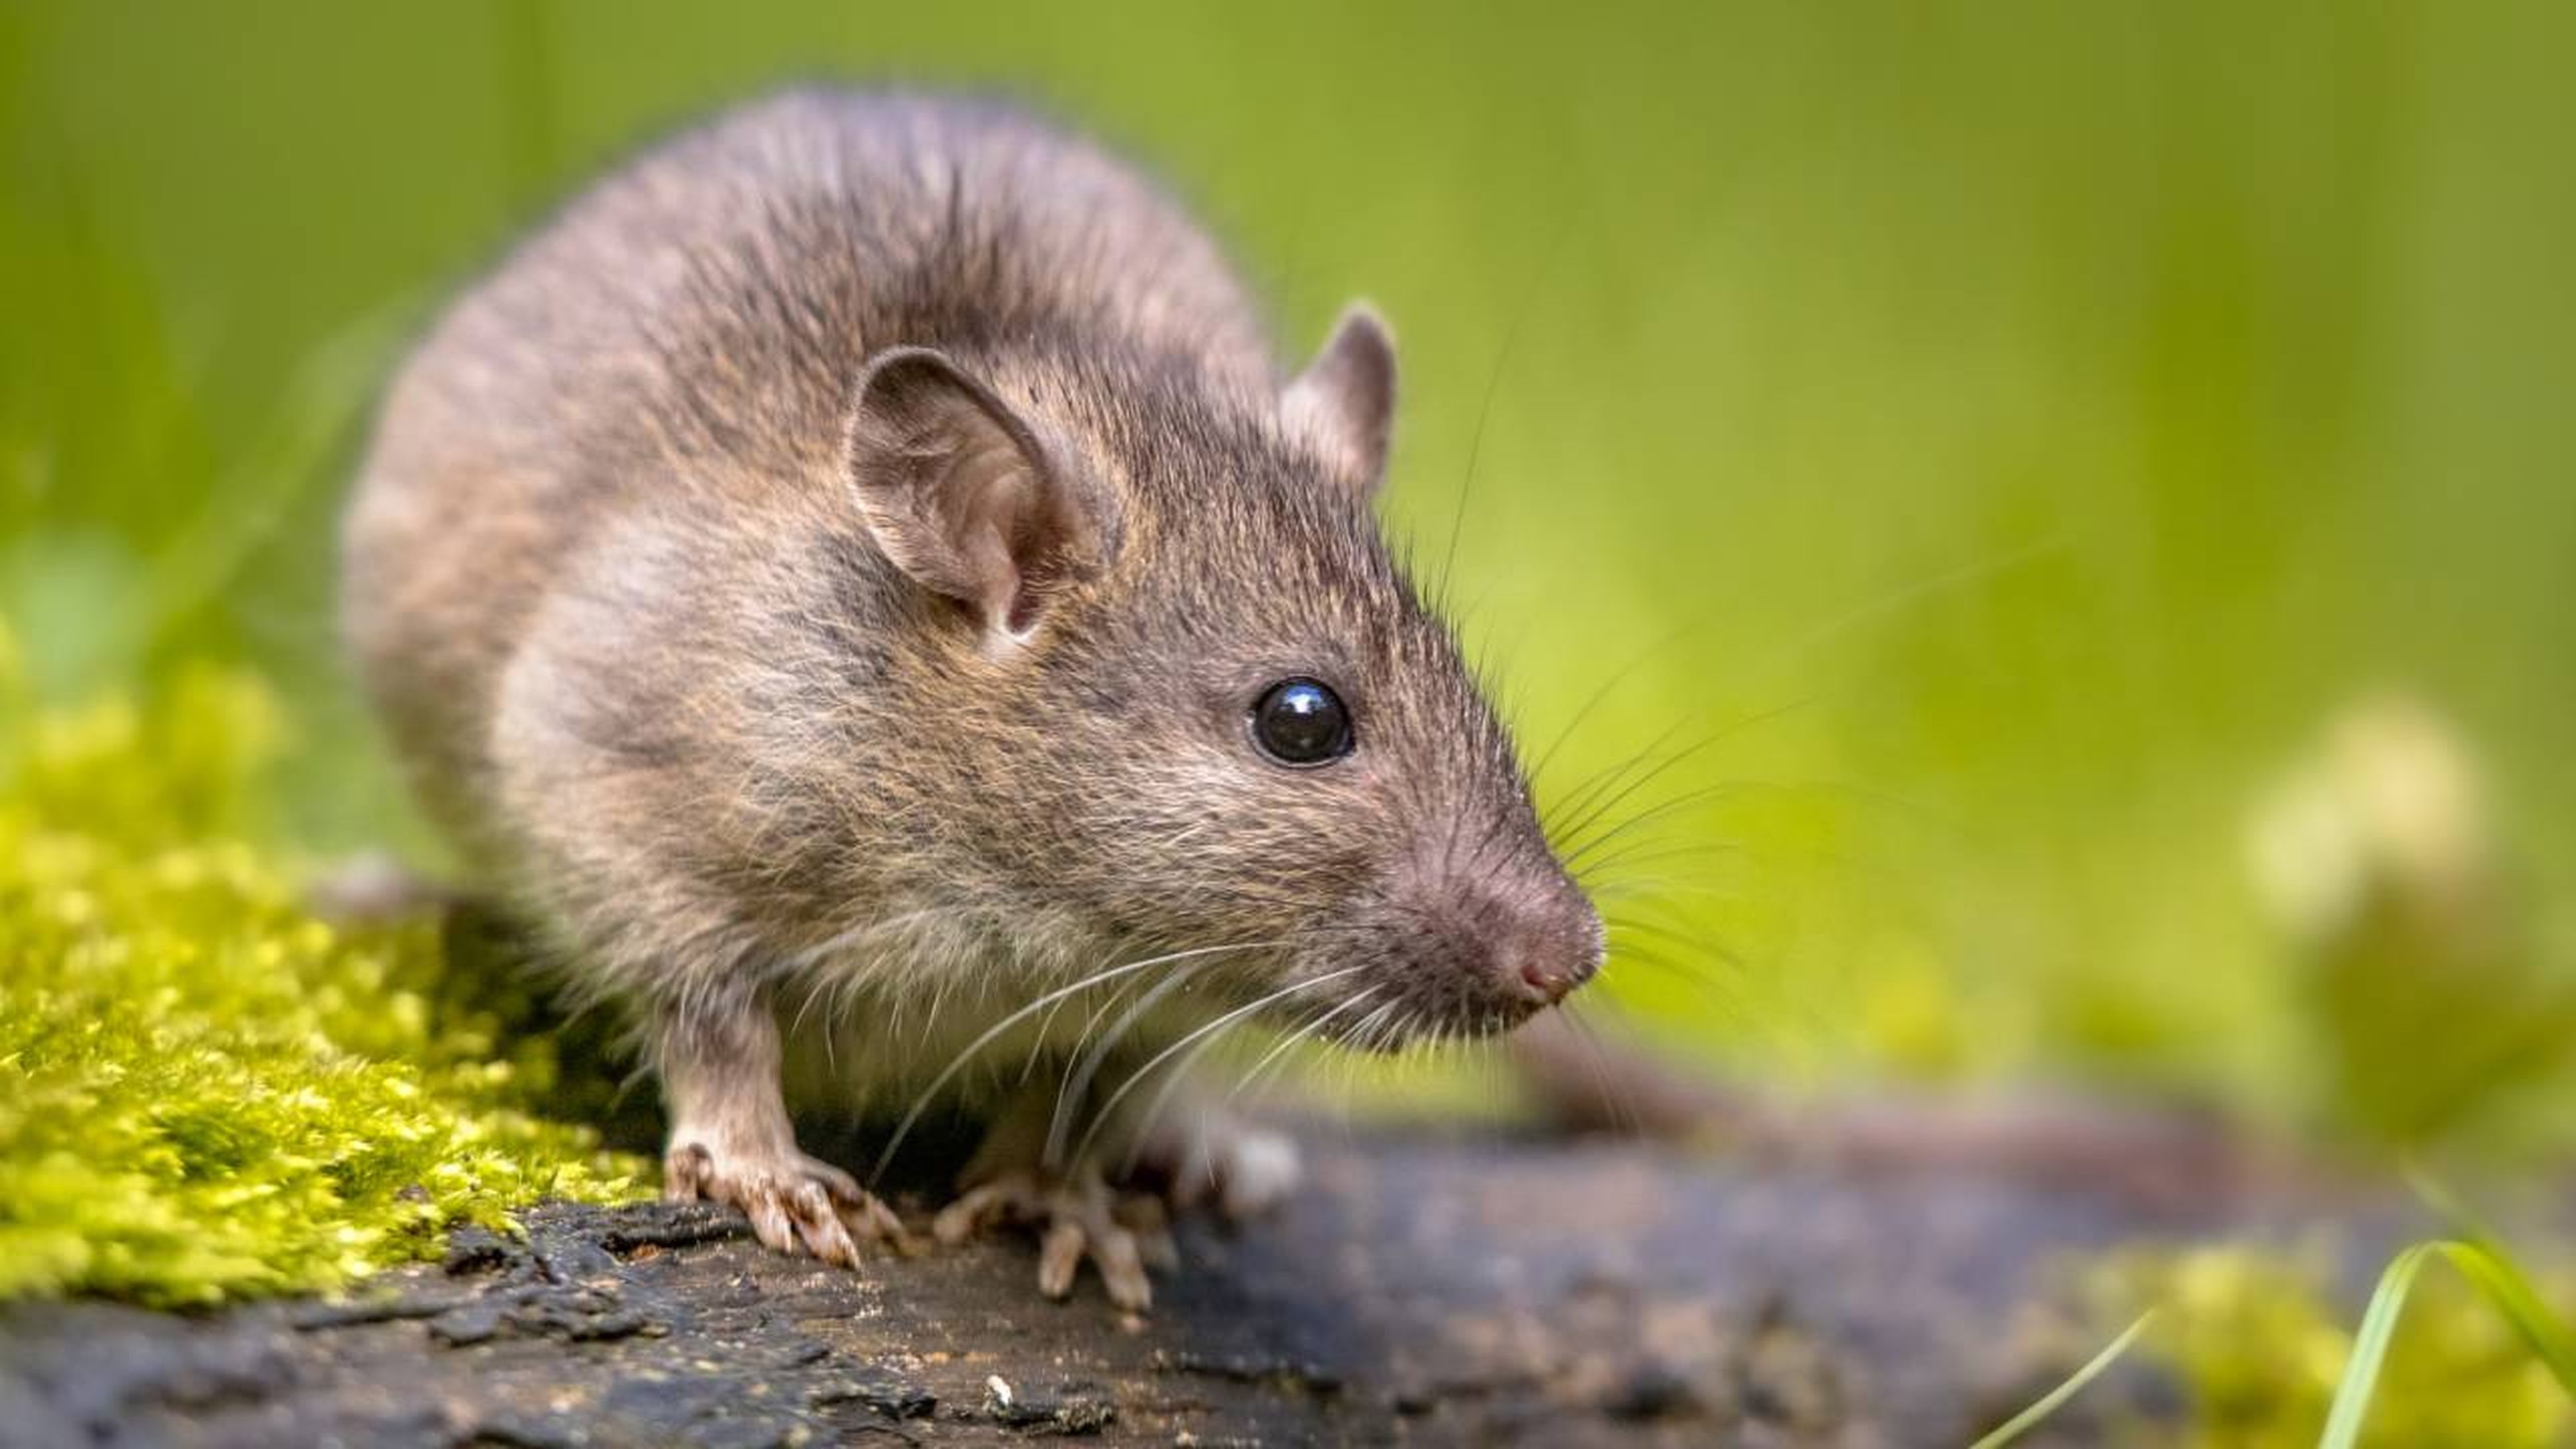 Villano A la meditación Neuropatía Qué significa soñar con ratas? 10 interpretaciones sobre tus sueños |  Business Insider España